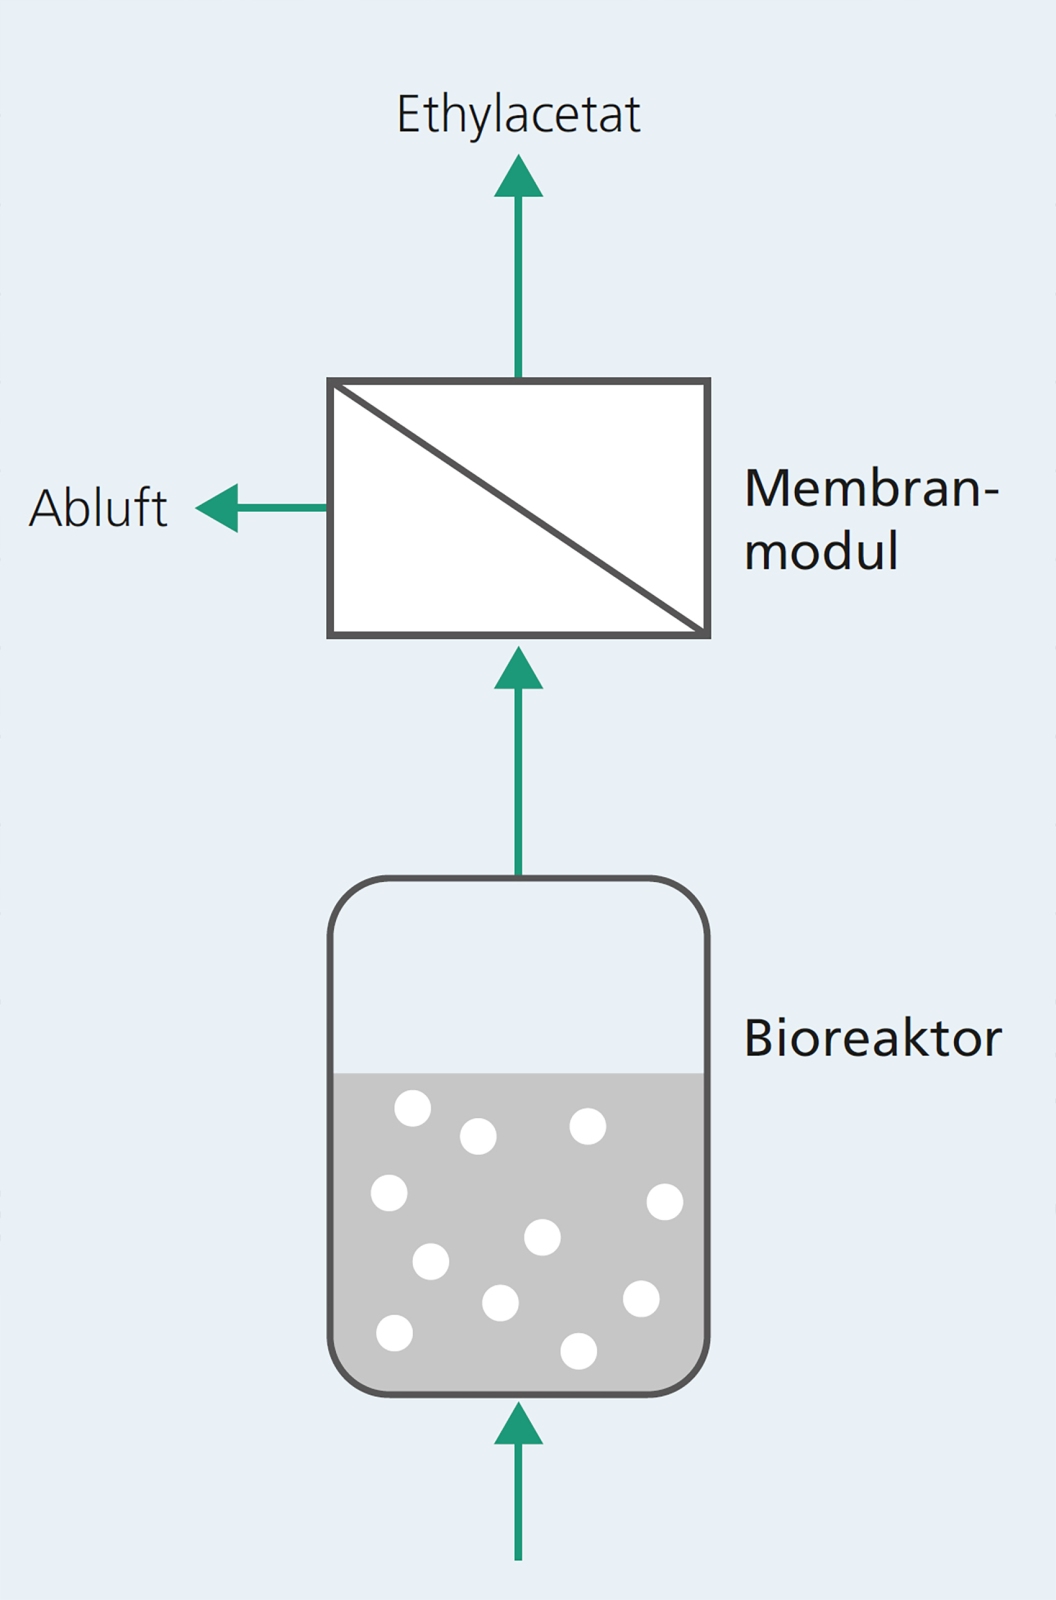 Nach der Fermentation der Melasse im Bioreaktor wird das entstandene Gas-Dampf-Gemisch durch ein Membranmodul geleitet und das wertvolle Ethylacetat abgetrennt.